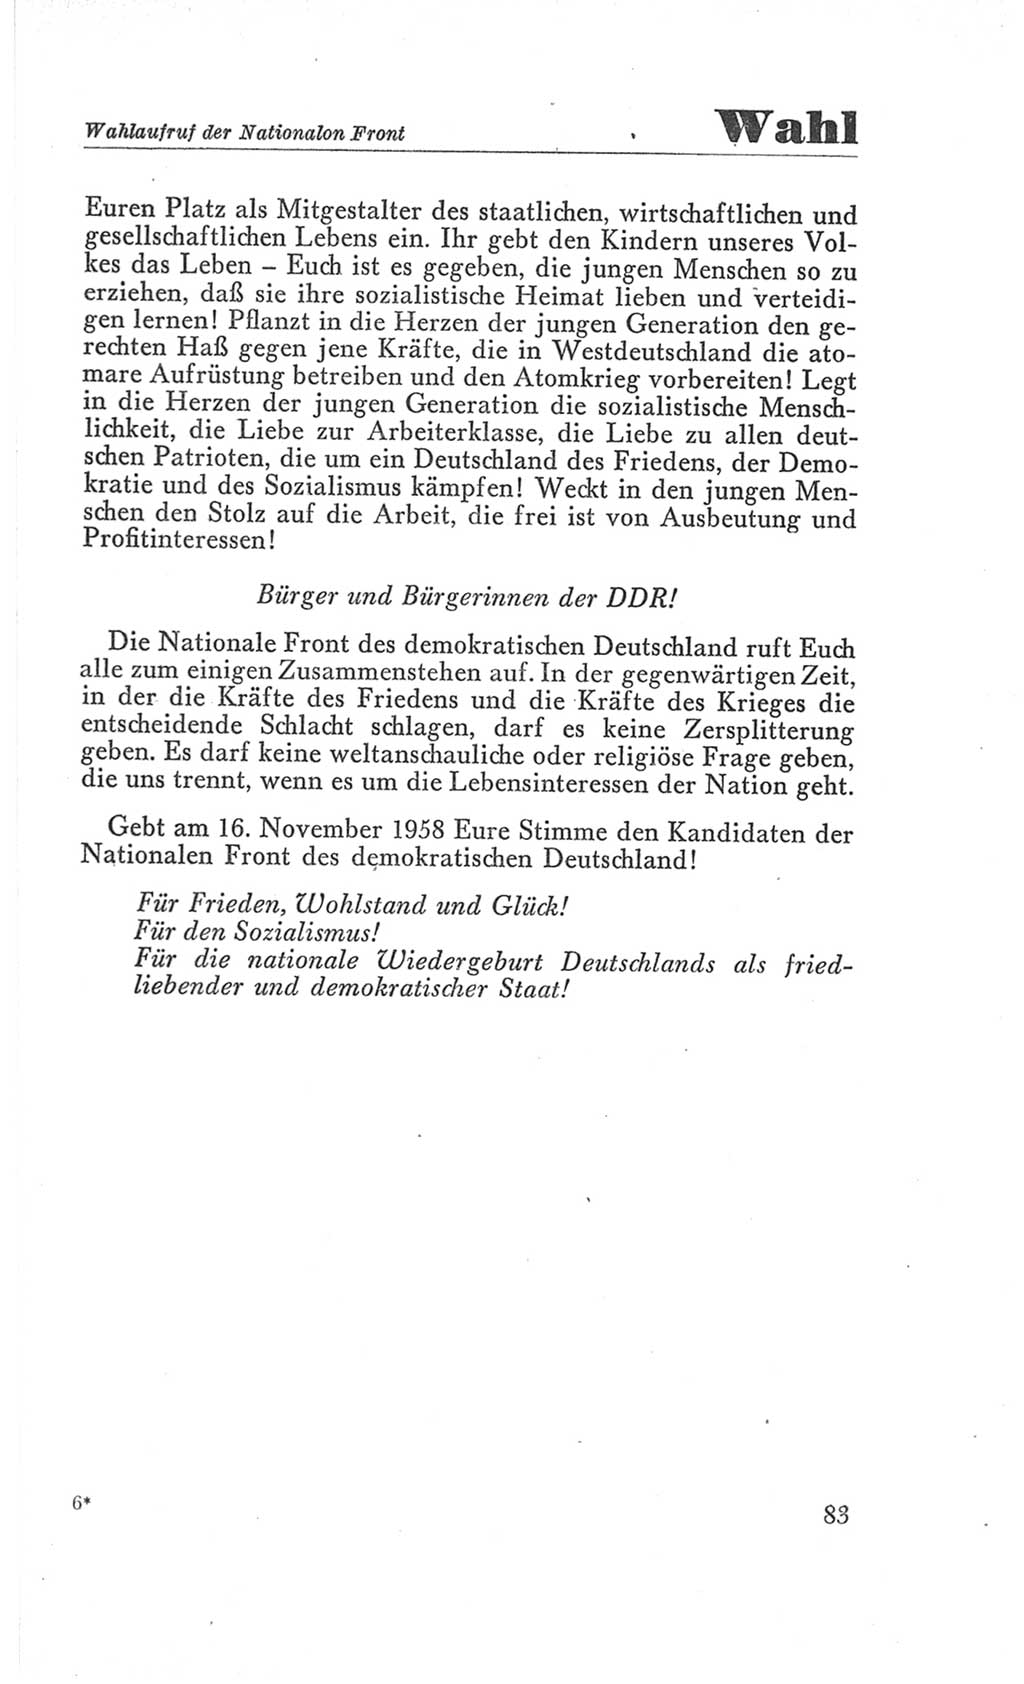 Handbuch der Volkskammer (VK) der Deutschen Demokratischen Republik (DDR), 3. Wahlperiode 1958-1963, Seite 83 (Hdb. VK. DDR 3. WP. 1958-1963, S. 83)